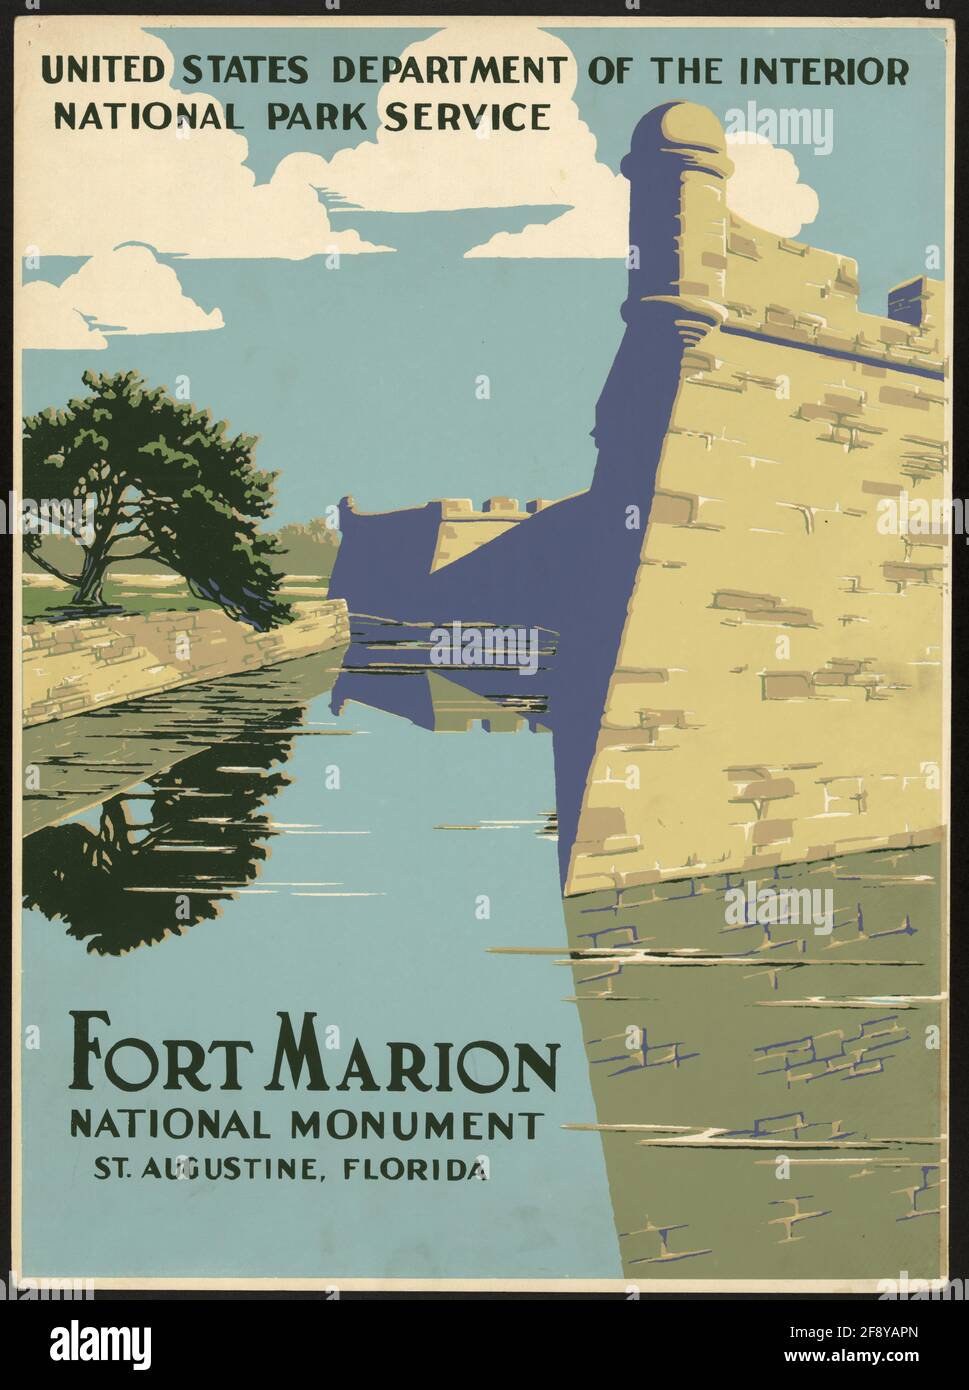 Un cartel de viaje clásico para el Monumento Nacional Fort Marion, St Augustine, Florida Foto de stock